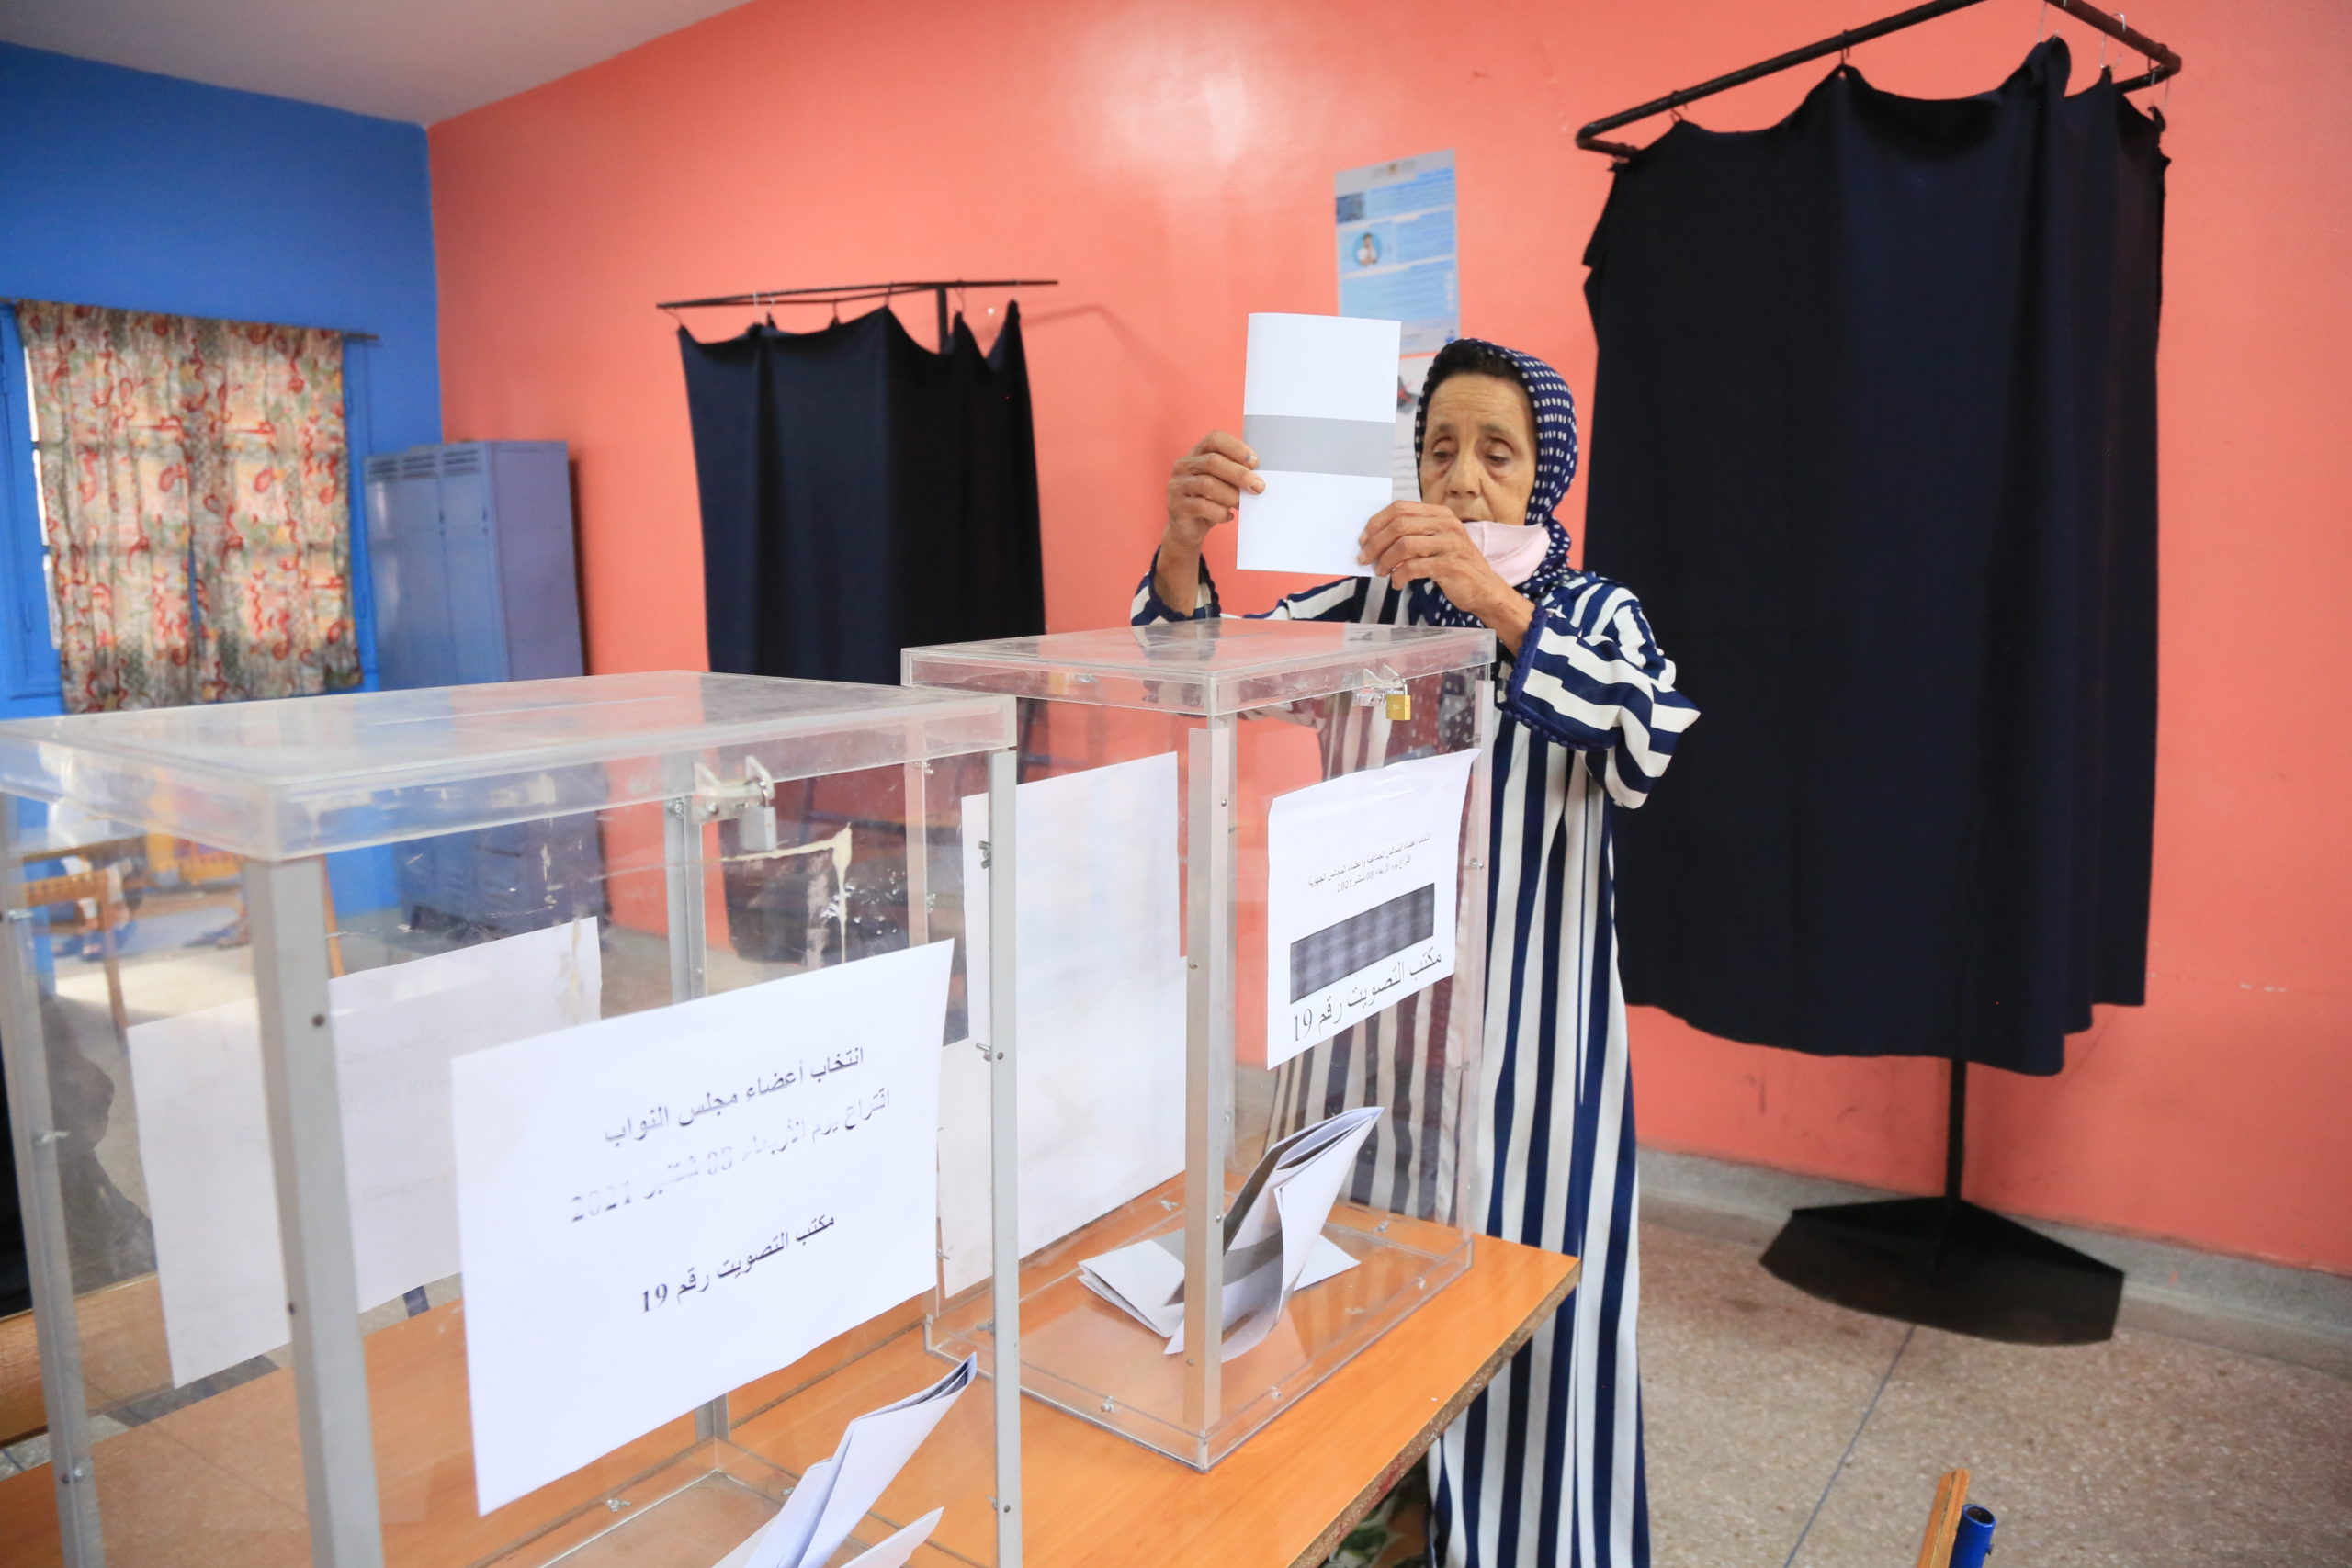 Fortes adhésion des électeurs dans les provinces du sud : Taux de participation atteint 50,18% au niveau national